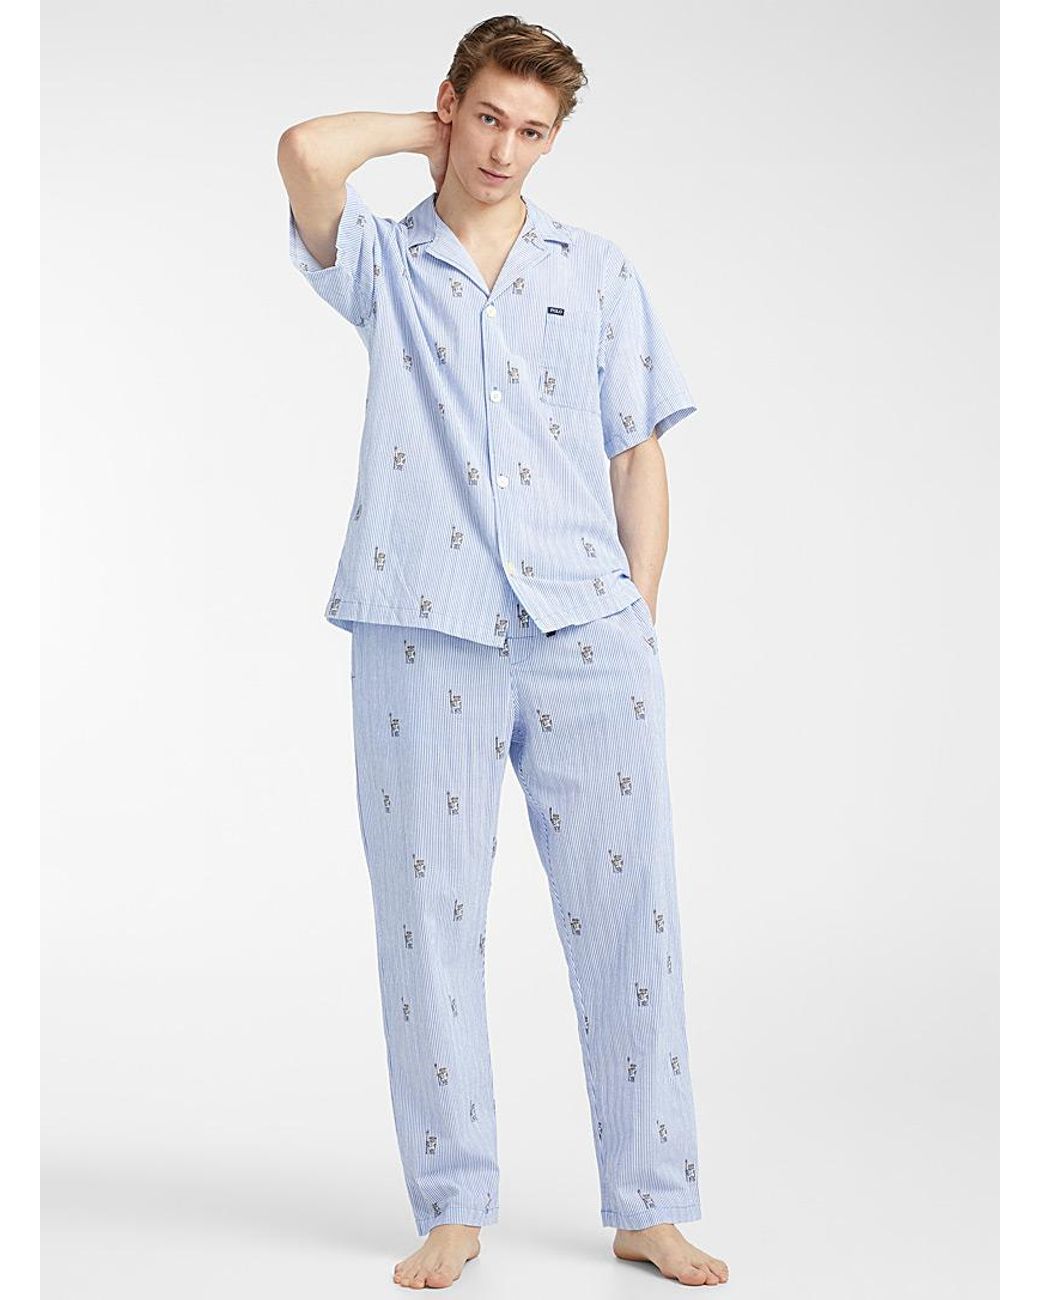 Polo Bear Pajamas | vlr.eng.br